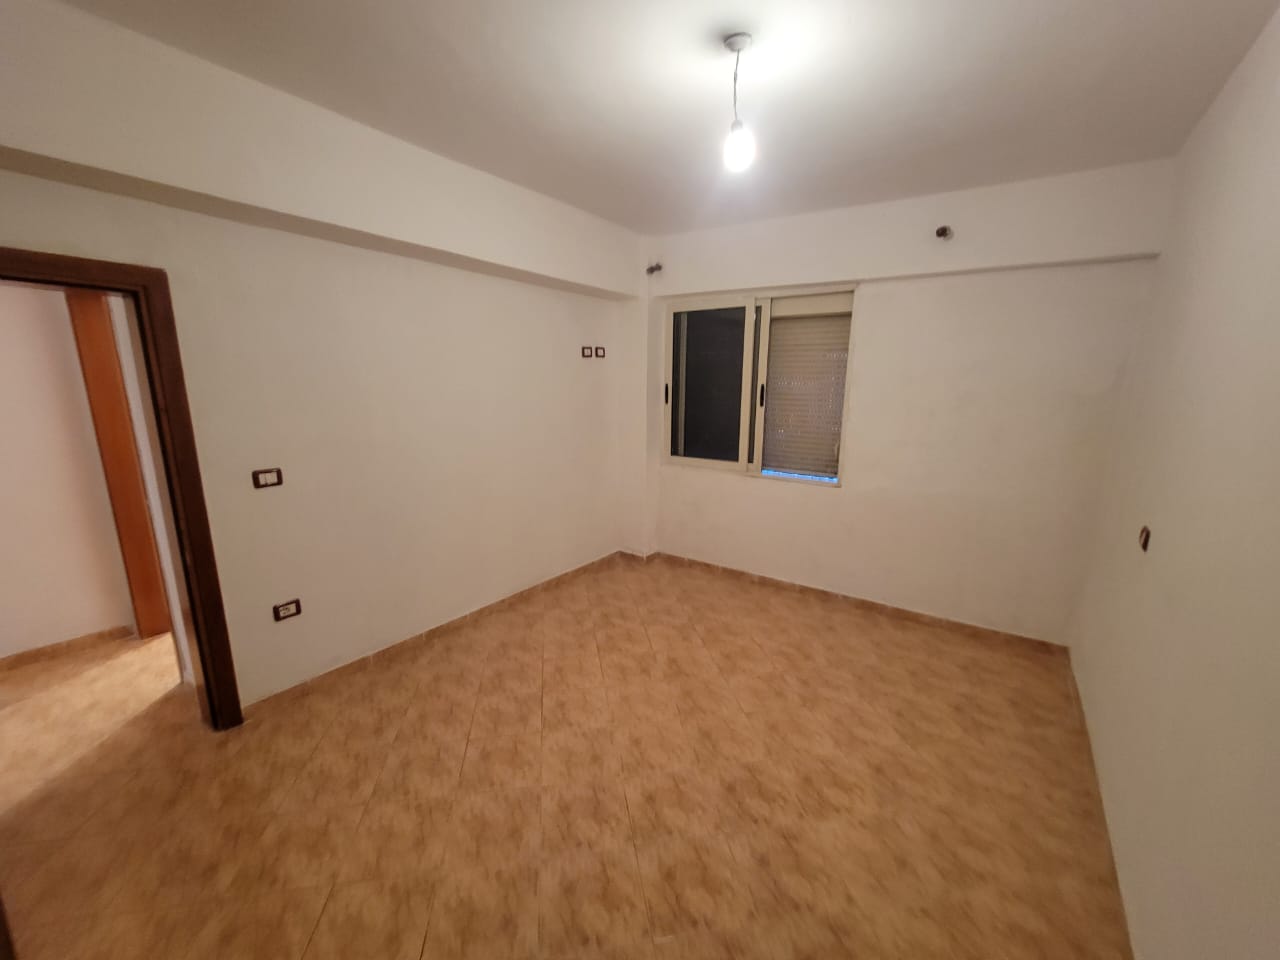 Foto e Apartment në shitje lagjja 18, Durrës